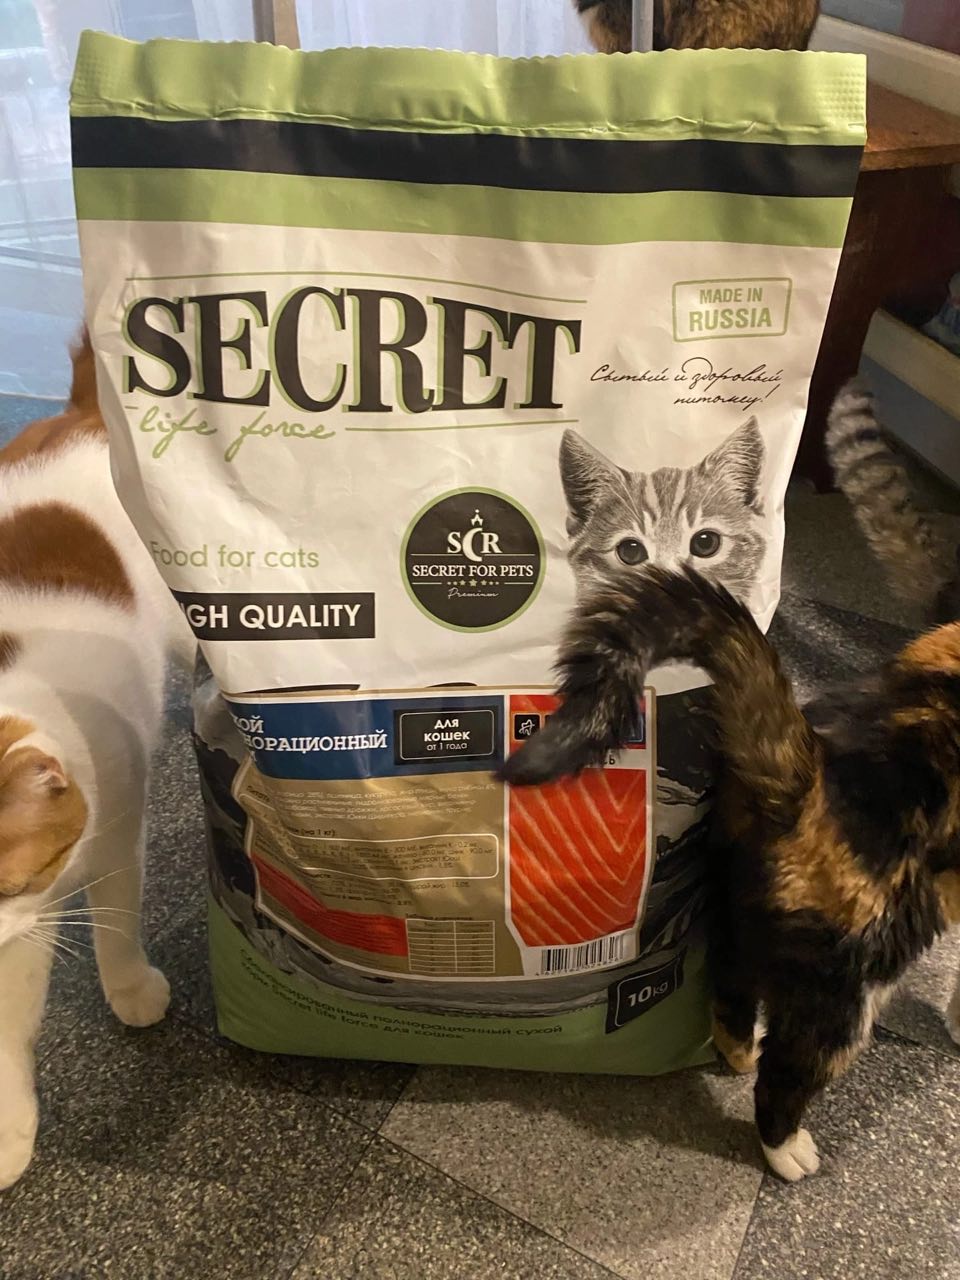 Cats secret